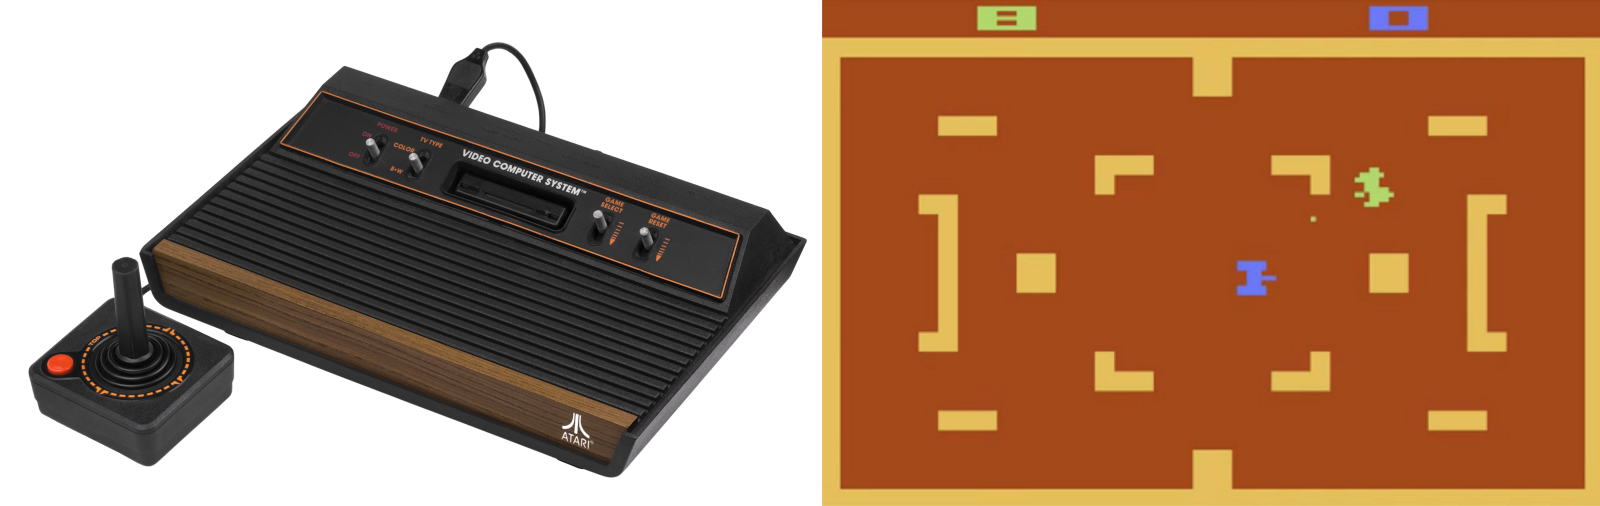 [Перевод] Как сделана Atari 2600: извлечь нечто (почти) из ничего